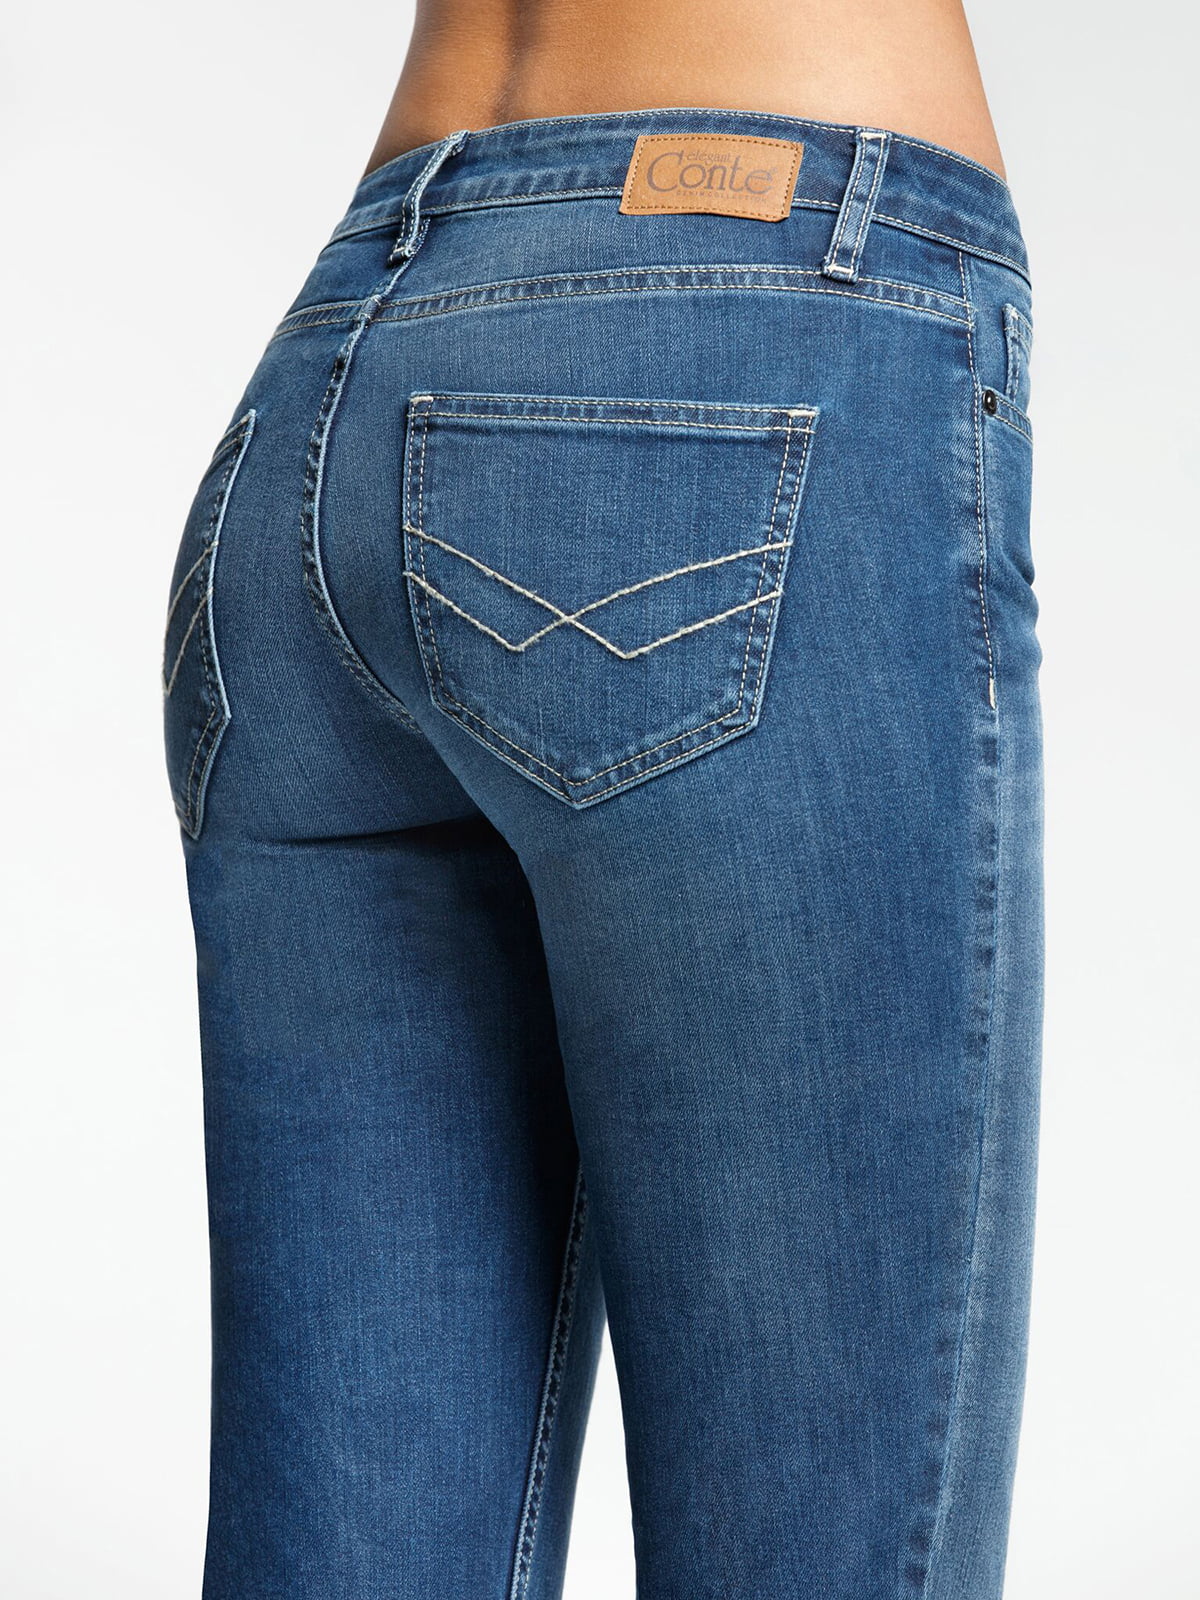 Заказать джинсы женские. Джинсы Conte Elegant 2091/49123. 2091-49123 Conte брюки женские. Джинсы женские. Классические джинсы женские.